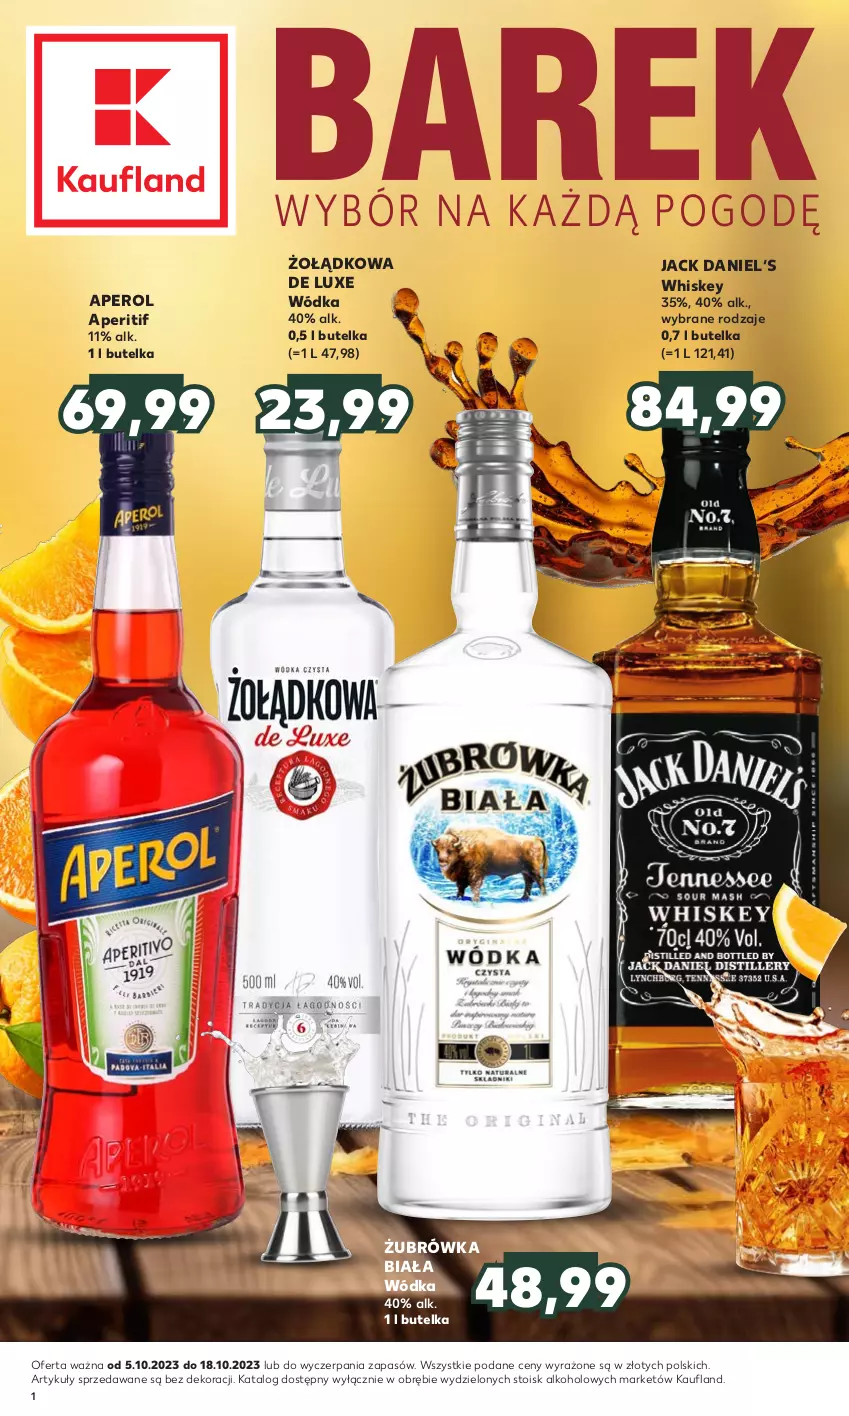 Gazetka promocyjna Kaufland - Barek Kauflandu - ważna 05.10 do 18.10.2023 - strona 1 - produkty: Aperol, Whiskey, Wódka